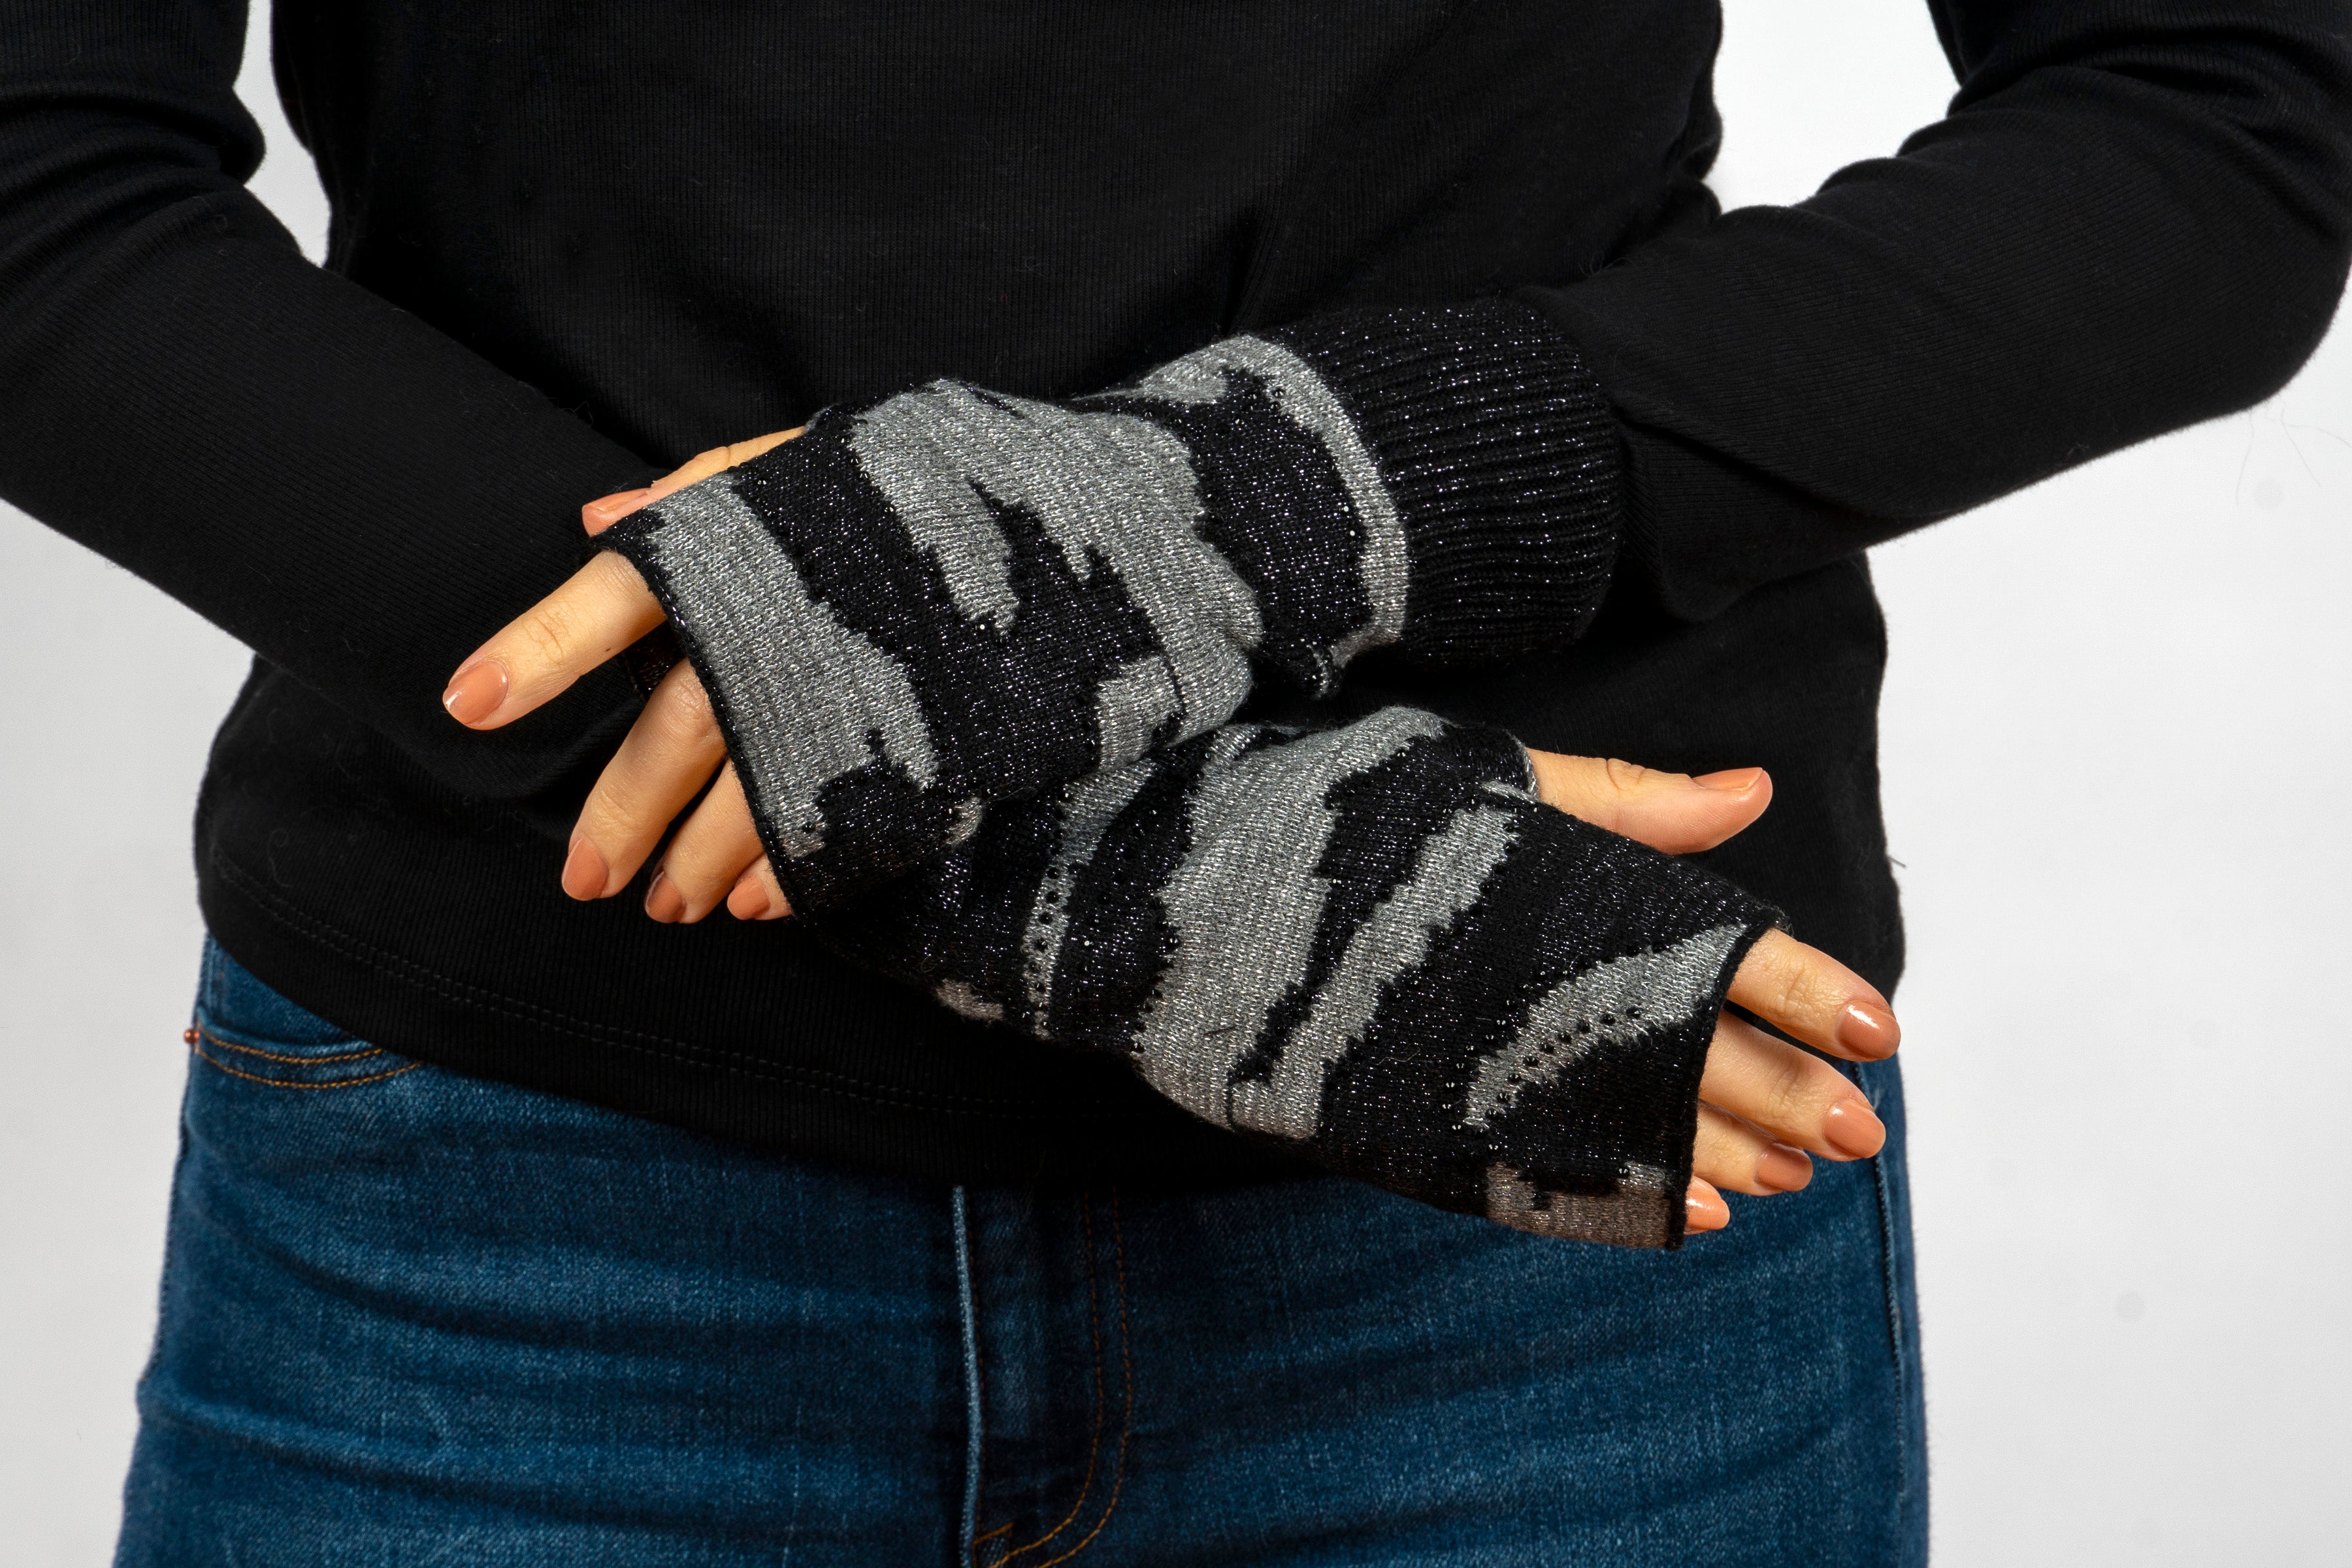 colorado black/gray camo fingerless gloves